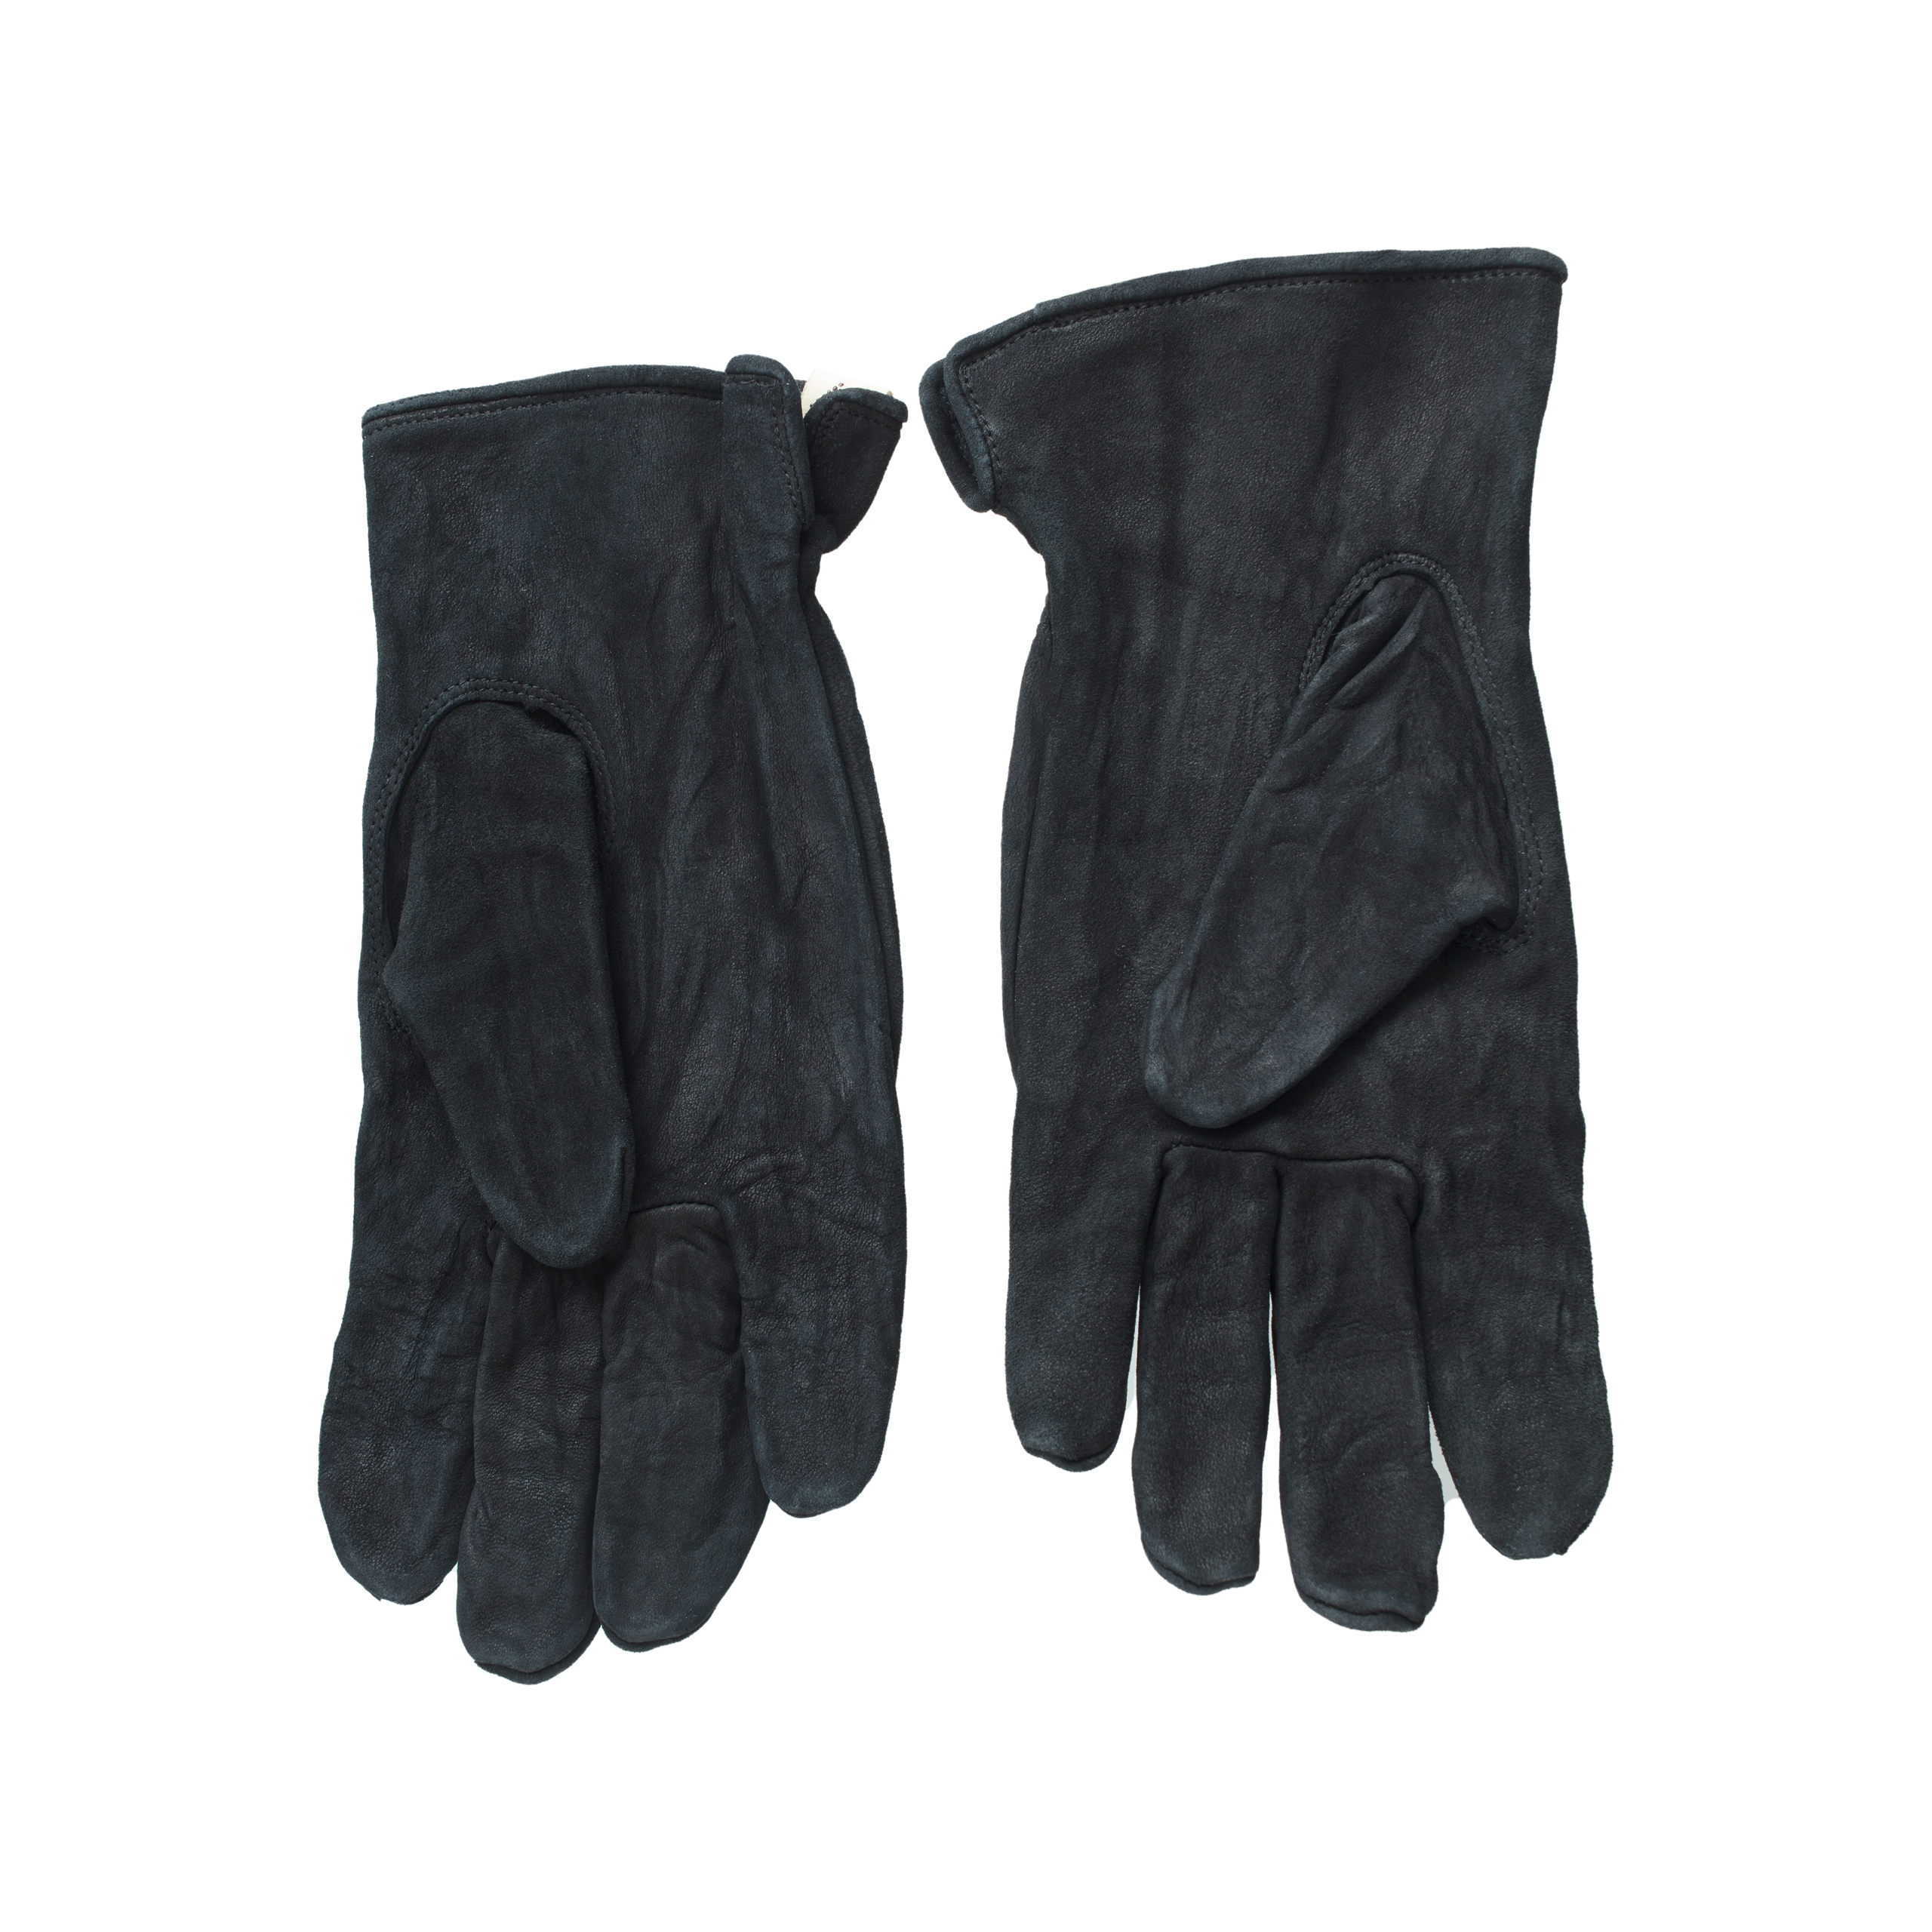 Коричневые замшевые перчатки visvim 0123203003008/BLACK, размер M/L 0123203003008/BLACK - фото 3